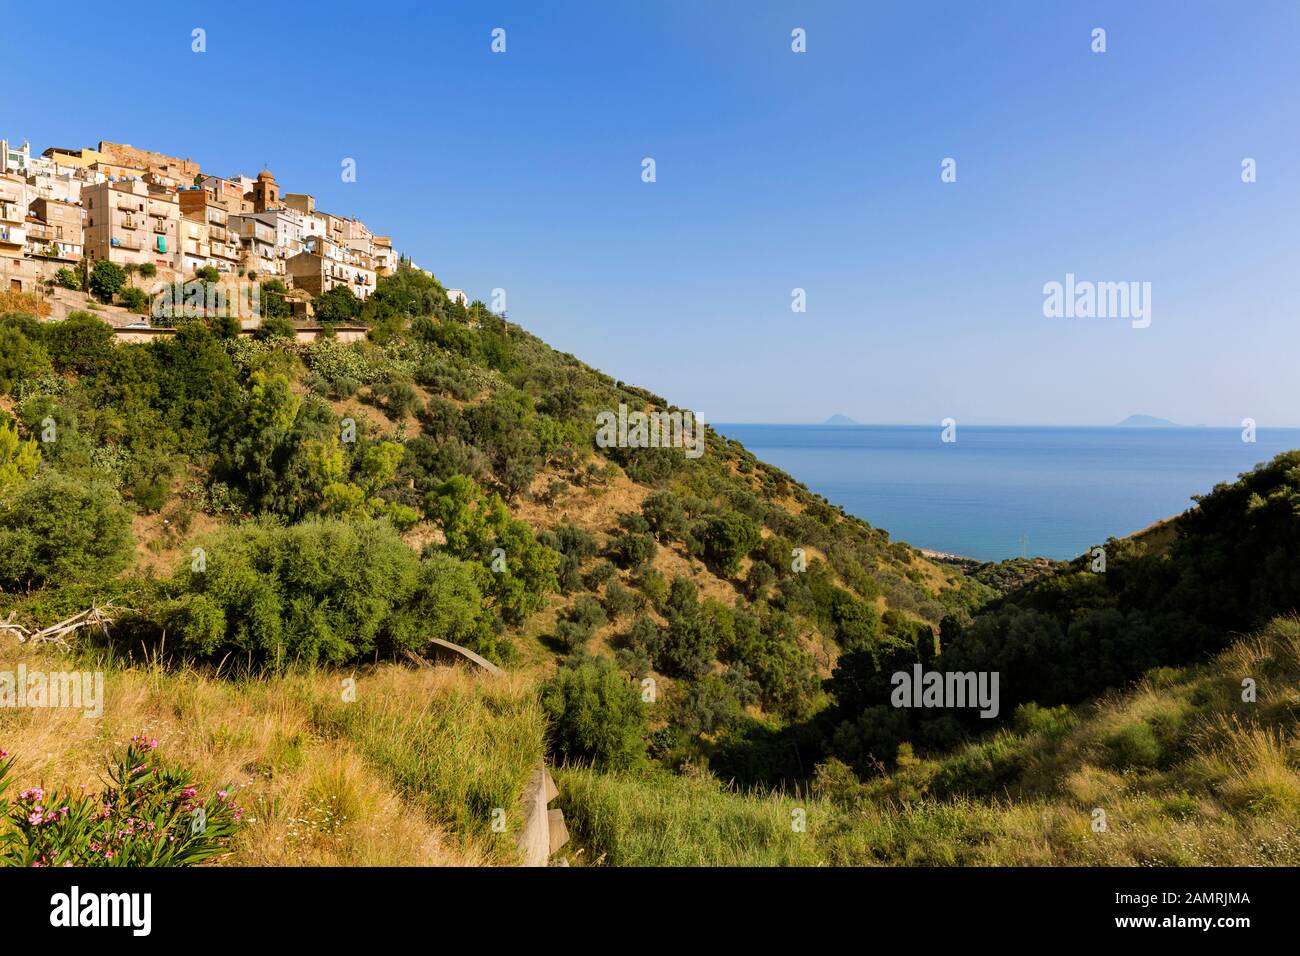 Blick auf das blaue Meer und die äolischen Inseln vom mittelalterlichen Dorf Caronia, Messina, Sizilien, Italien. Stockfoto